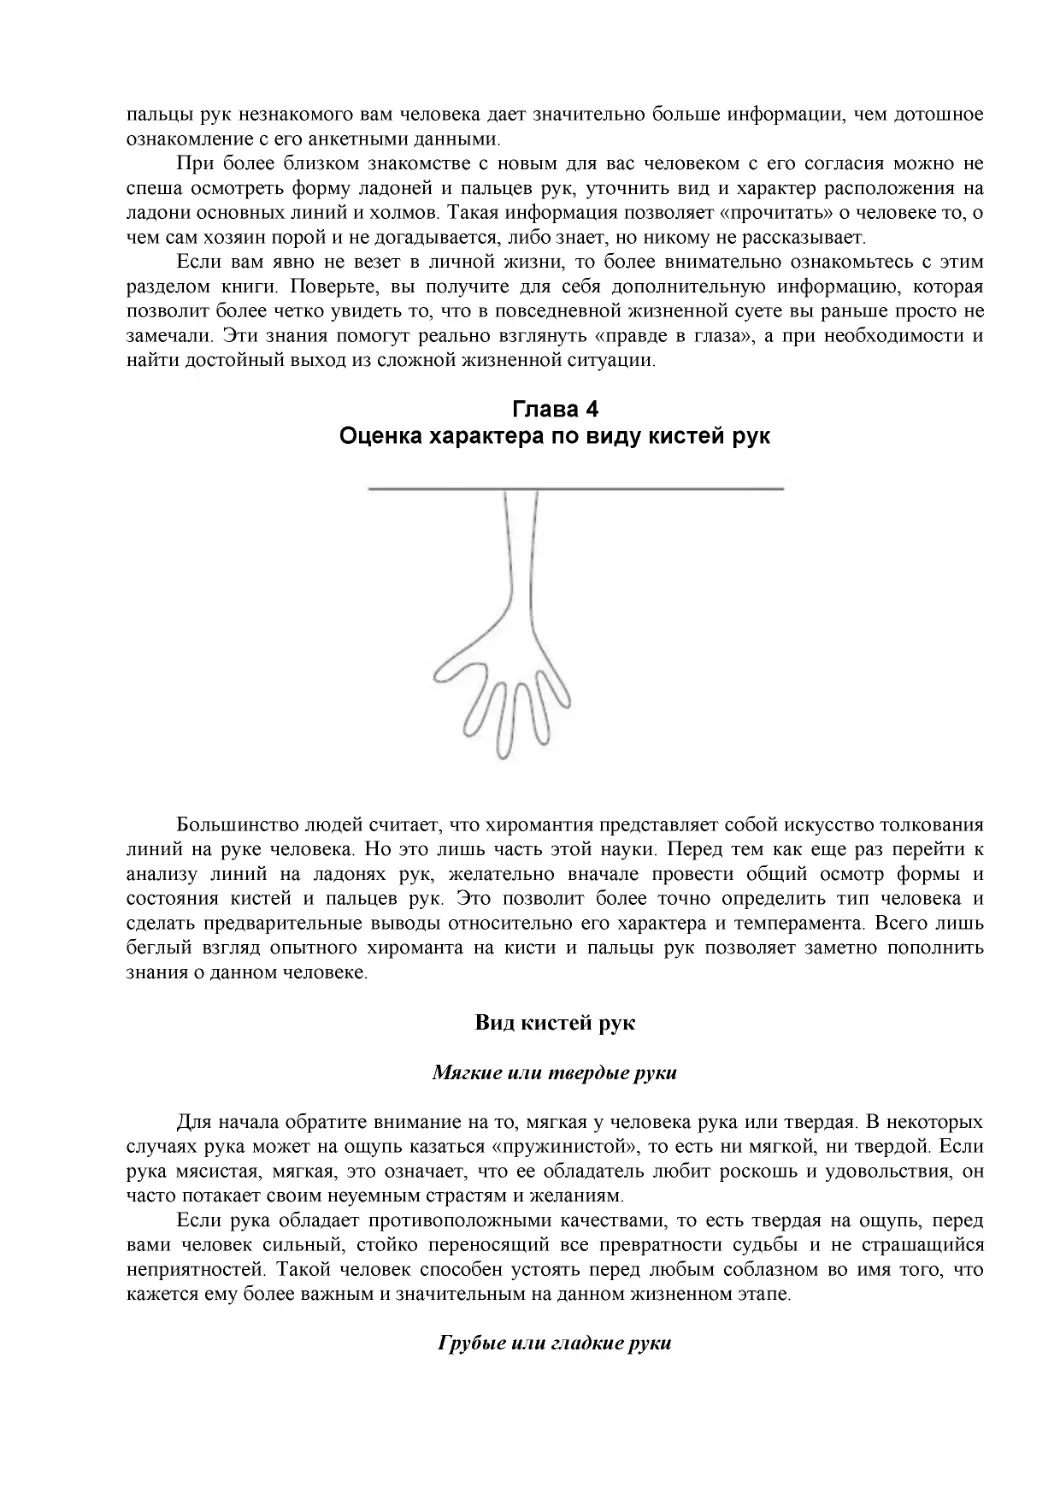 ﻿Оценка характера по виду кистей ру
﻿Грубые или гладкие рук